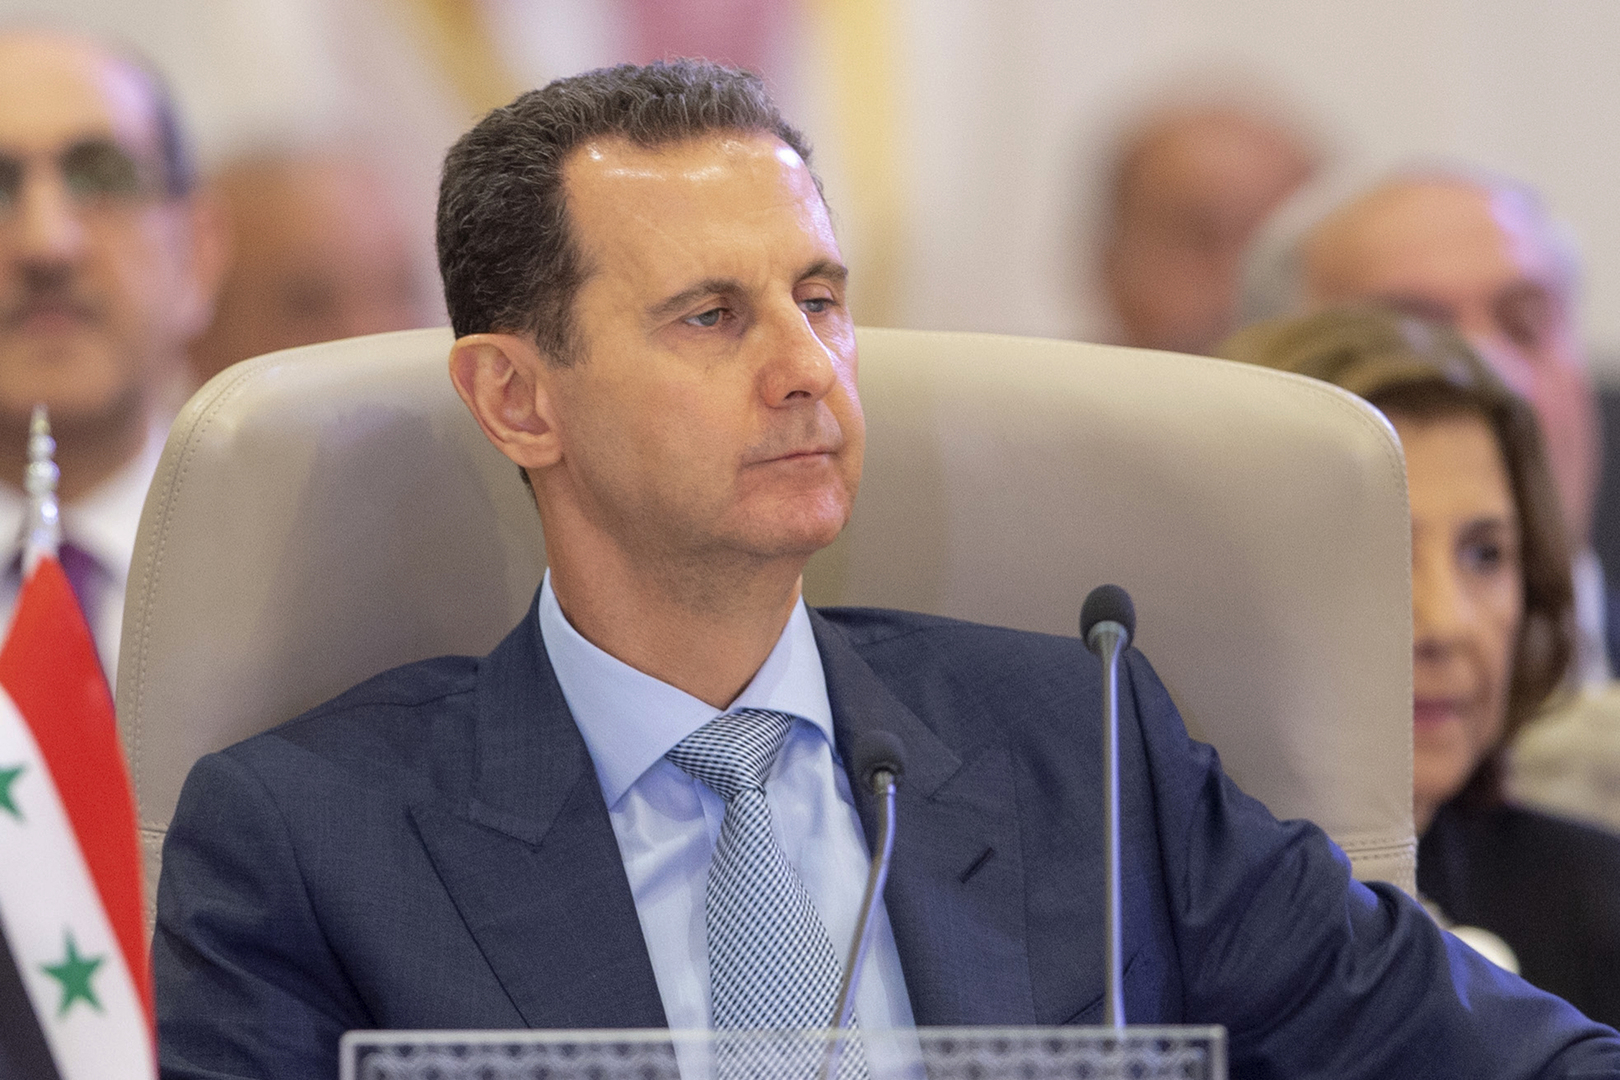 سيناتور روسي: الدول العربية بدعوة الأسد إلى قمة جدة أظهرت أن أوامر واشنطن غير مطاعة في المنطقة